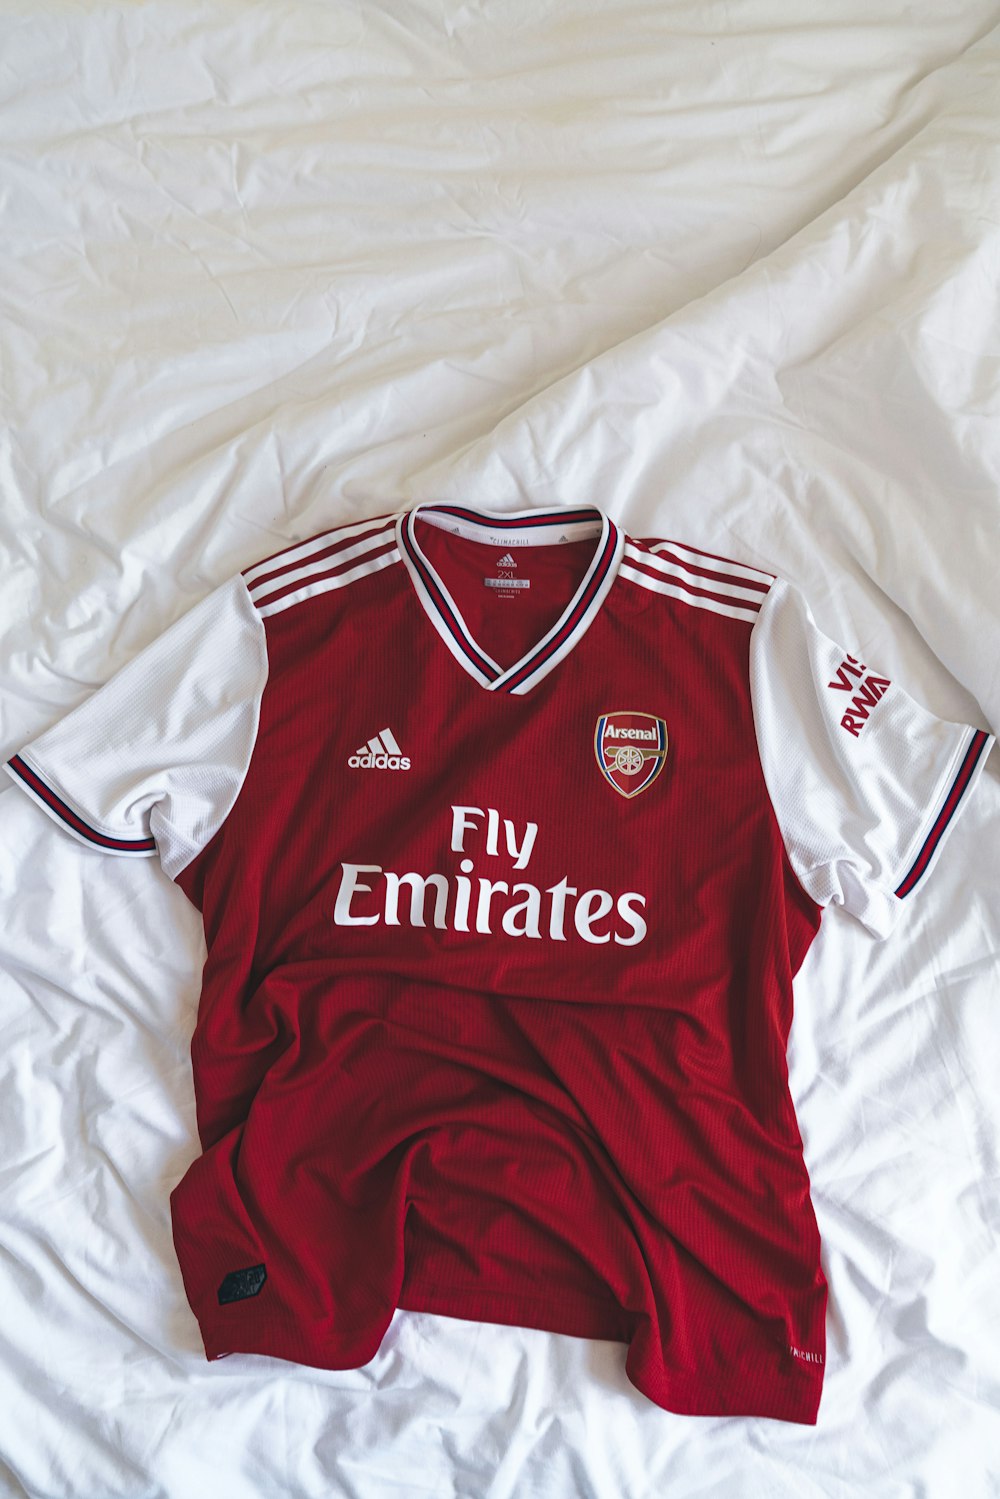 red and white Adidas Fly Emirates shirt photo – Free Arsenal london Image  on Unsplash